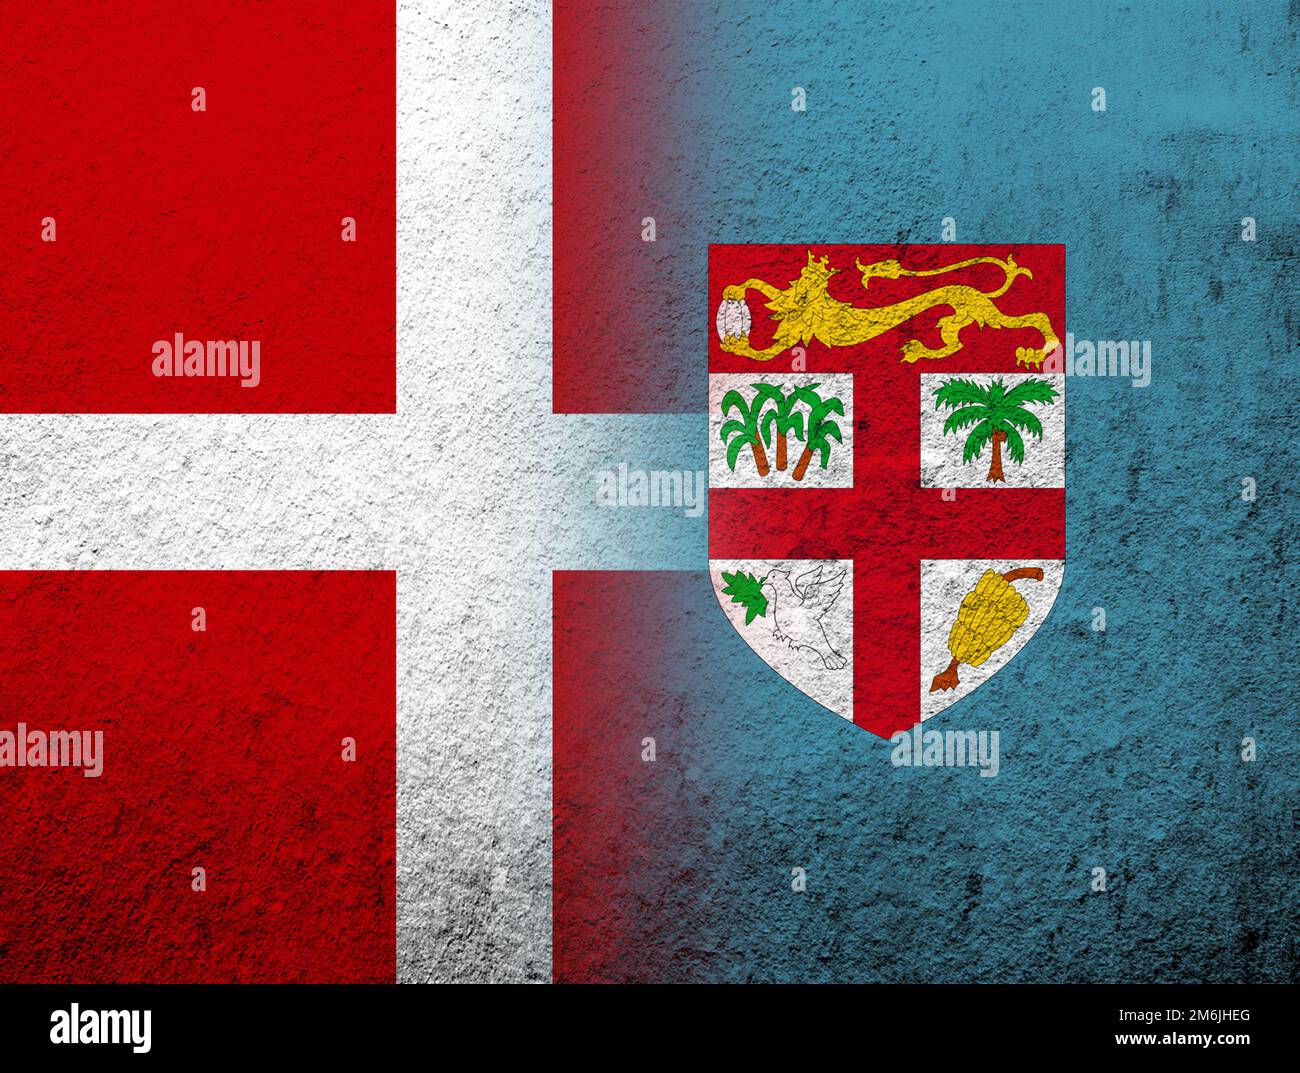 Le Royaume de Danemark drapeau national avec la République de Fidji drapeau national. Grunge l'arrière-plan Banque D'Images